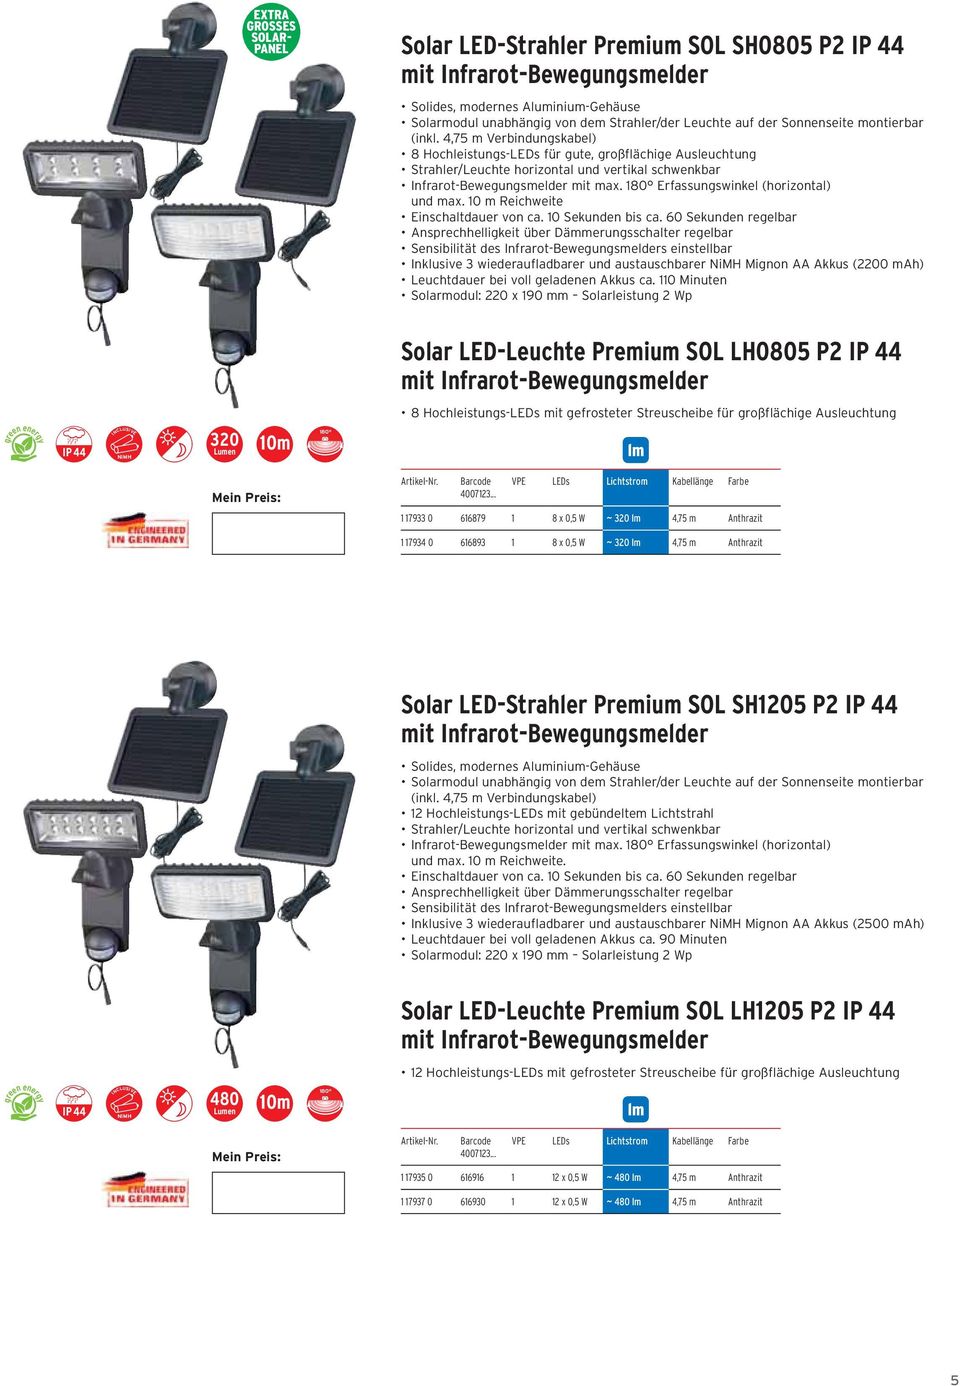 m Anthrazit Solar LED-Strahler Premium SOL SH1205 P2 Solar LED-Leuchte Premium SOL LH1205 P2 480 1 17935